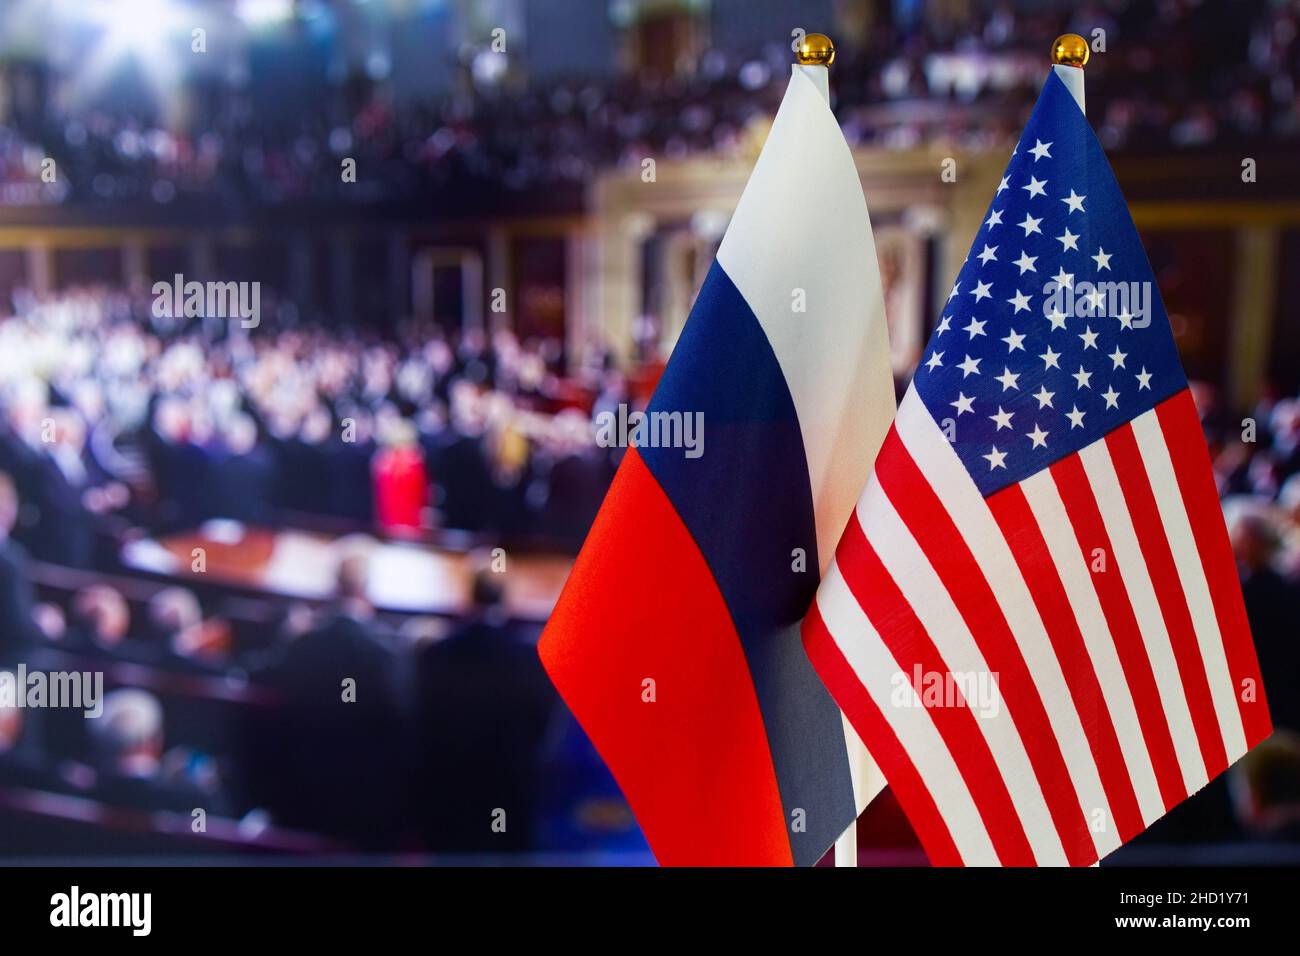 Die US-Flagge, die russische Flagge mit Platz für Text. Flagge der USA, Flagge Russlands. Die Konfrontation zwischen den Vereinigten Staaten von Amerika und der Russischen Föderation Stockfoto